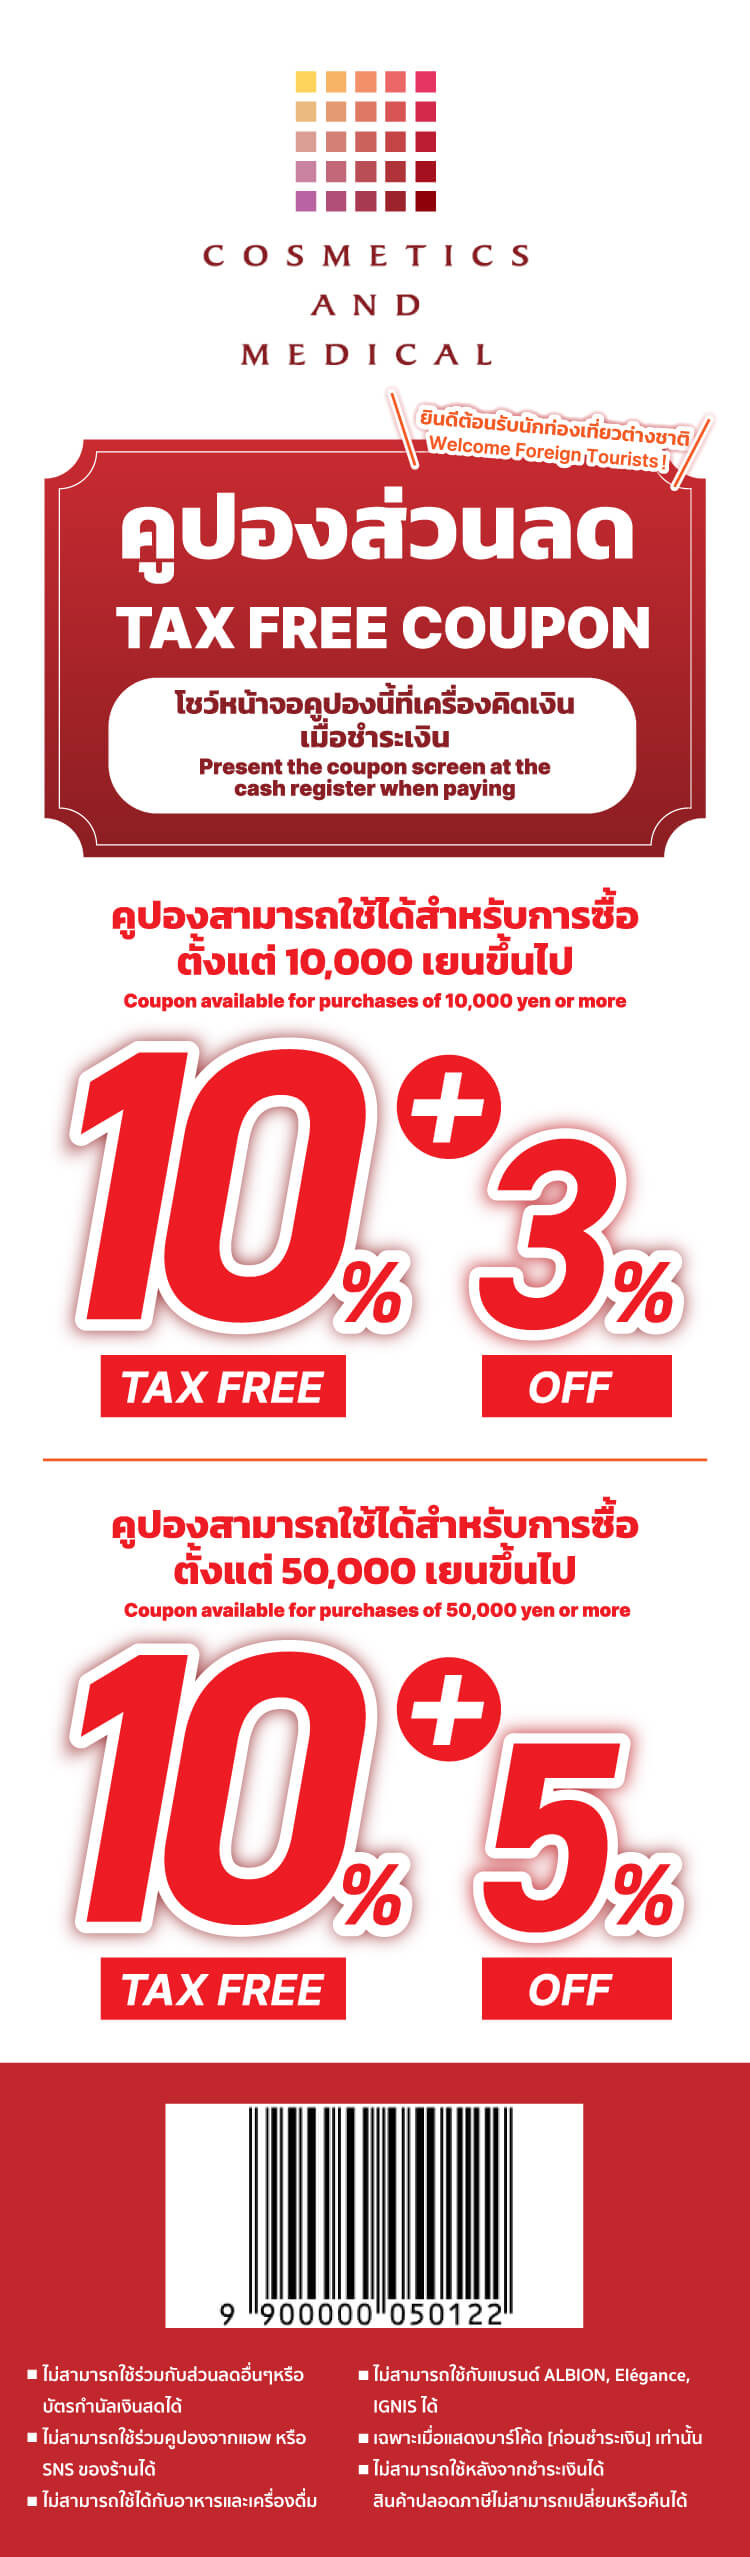 ส่วนลด 3% + Tax free 10% สำหรับการซื้อมากกว่า 10,000 เยน ไม่รวมภาษี <br></noscript>ส่วนลด 5% + Tax free 10% สำหรับการซื้อ 50,000 เยนขึ้นไปไม่รวมภาษี